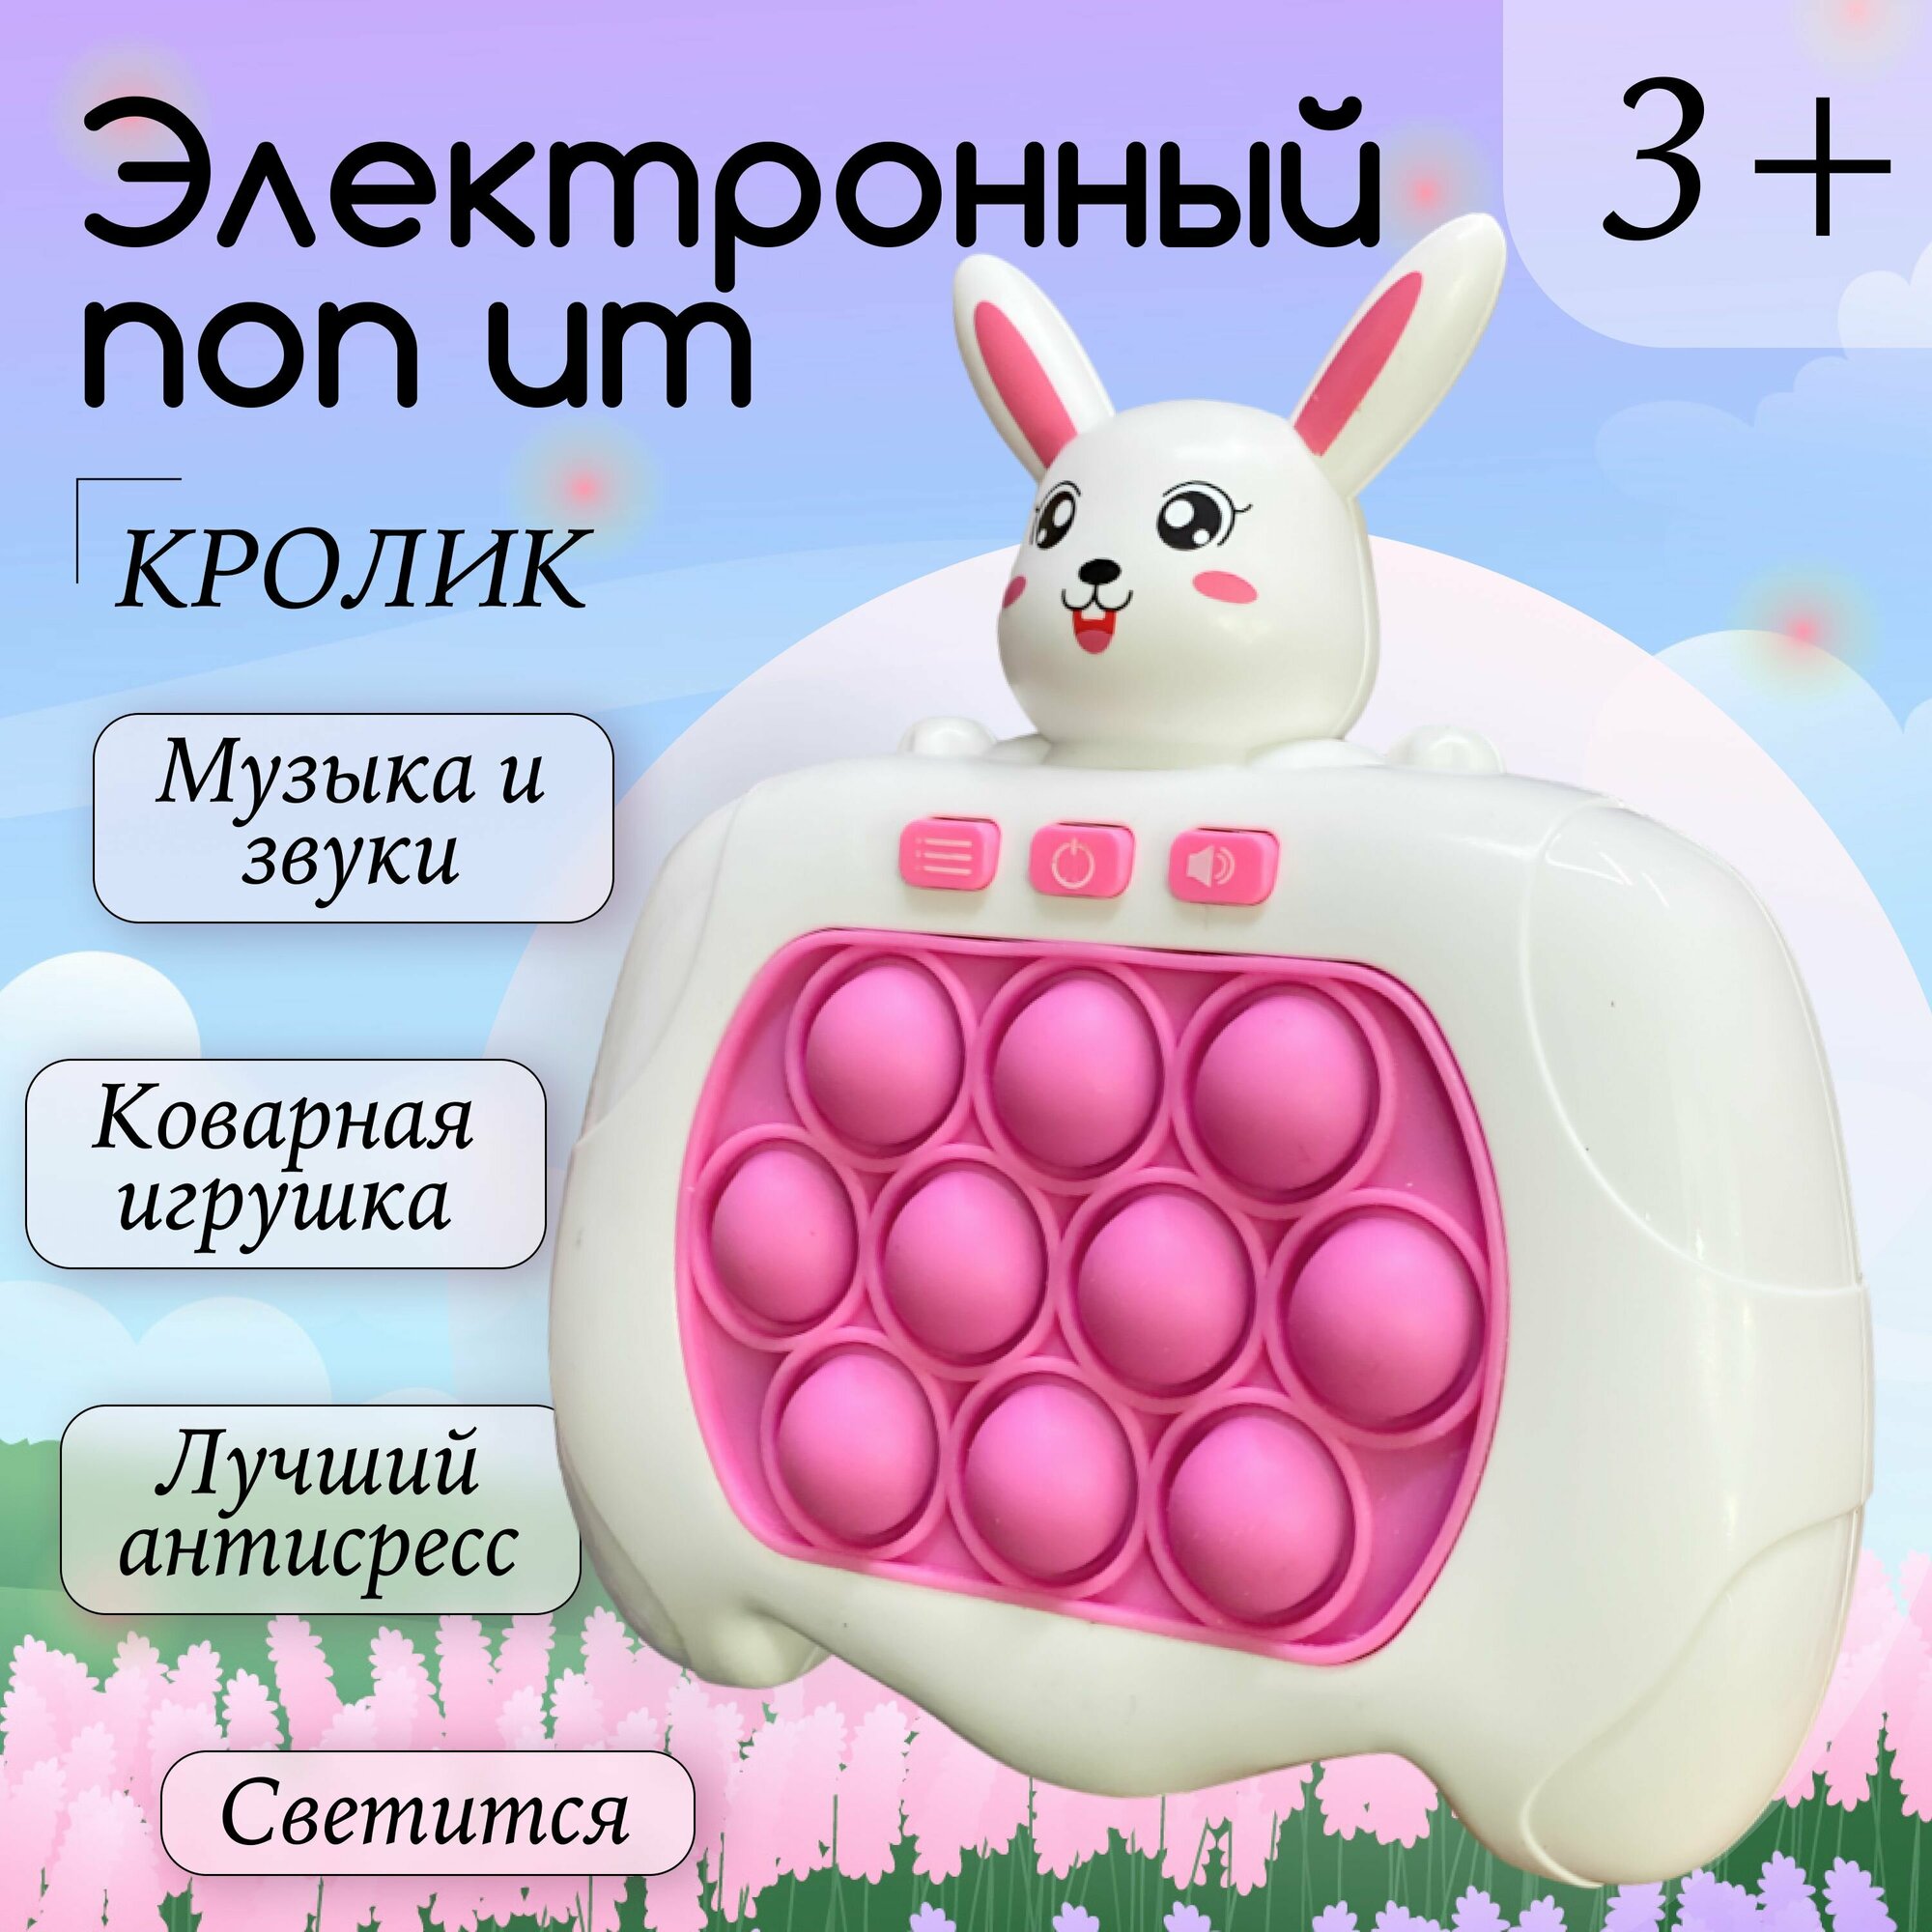 Электронный поп ит Кролик, игрушка Антистресс для детей, Симпл Димпл